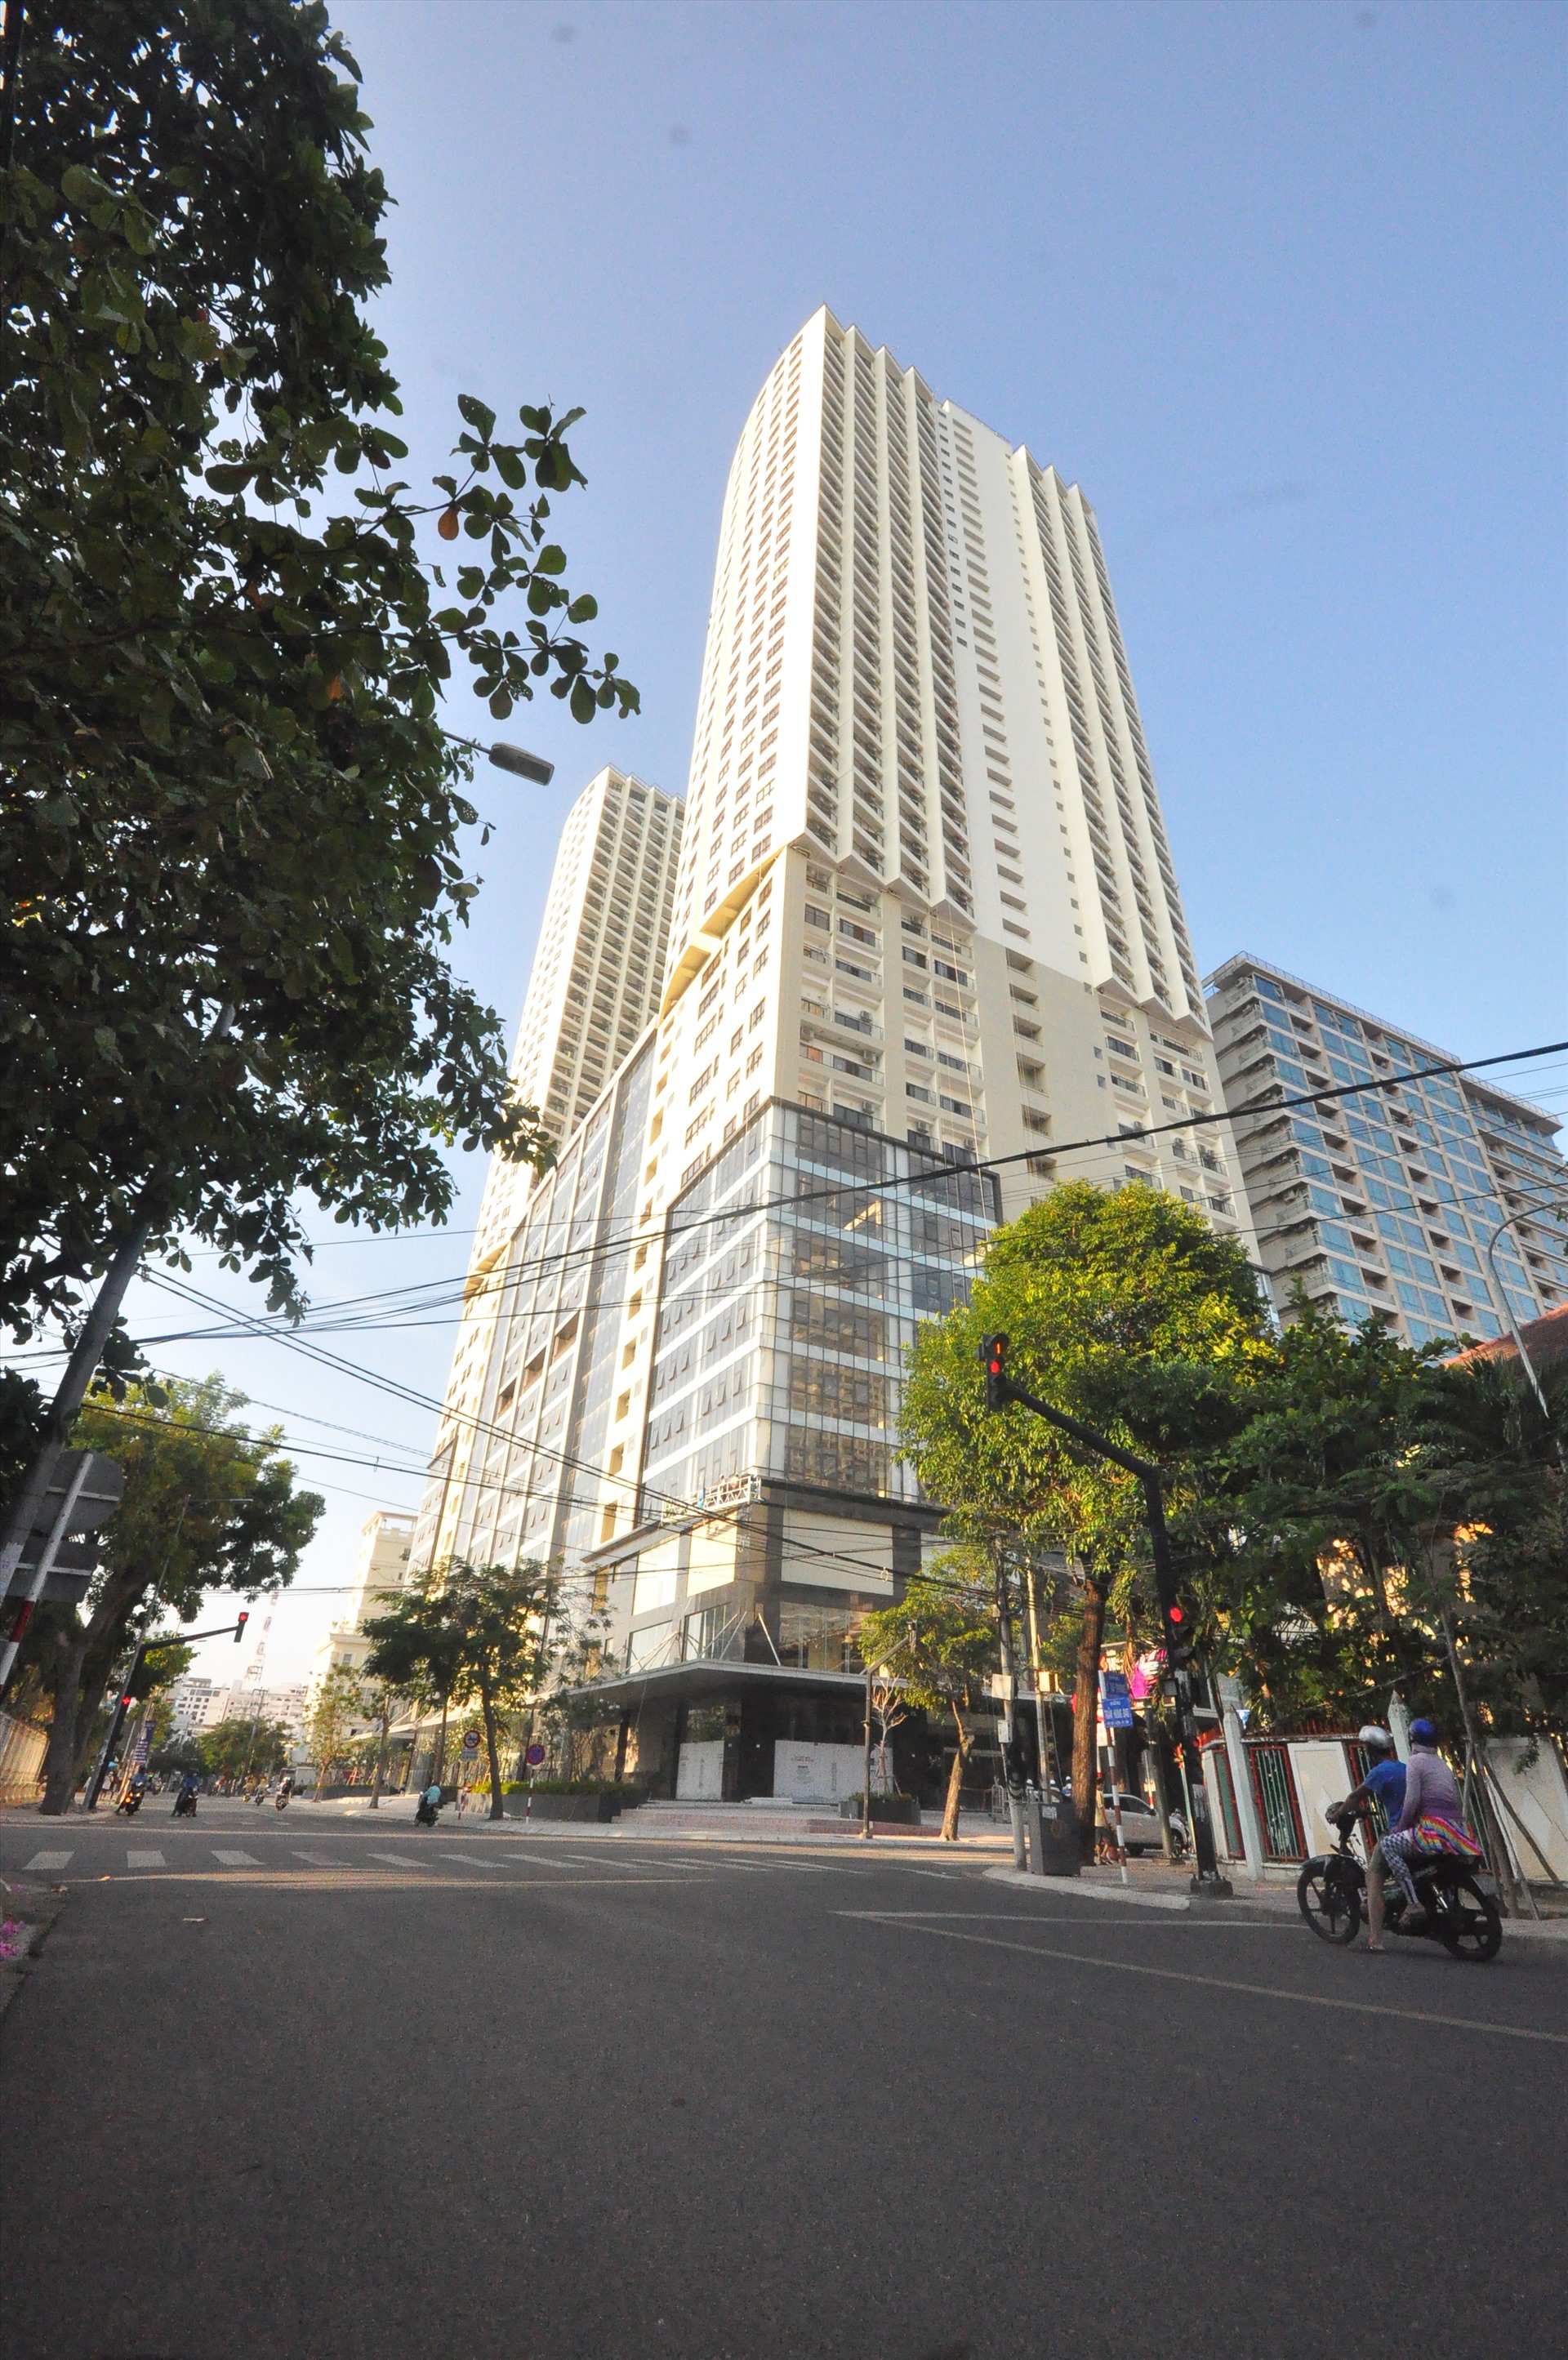 Dự án Gold Coast (số 1, Trần Hưng Đạo, Khánh Hòa) cao 40 tầng nổi, 3 tầng hầm với quy mô 920 căn hộ. Ảnh: Nhiệt Băng